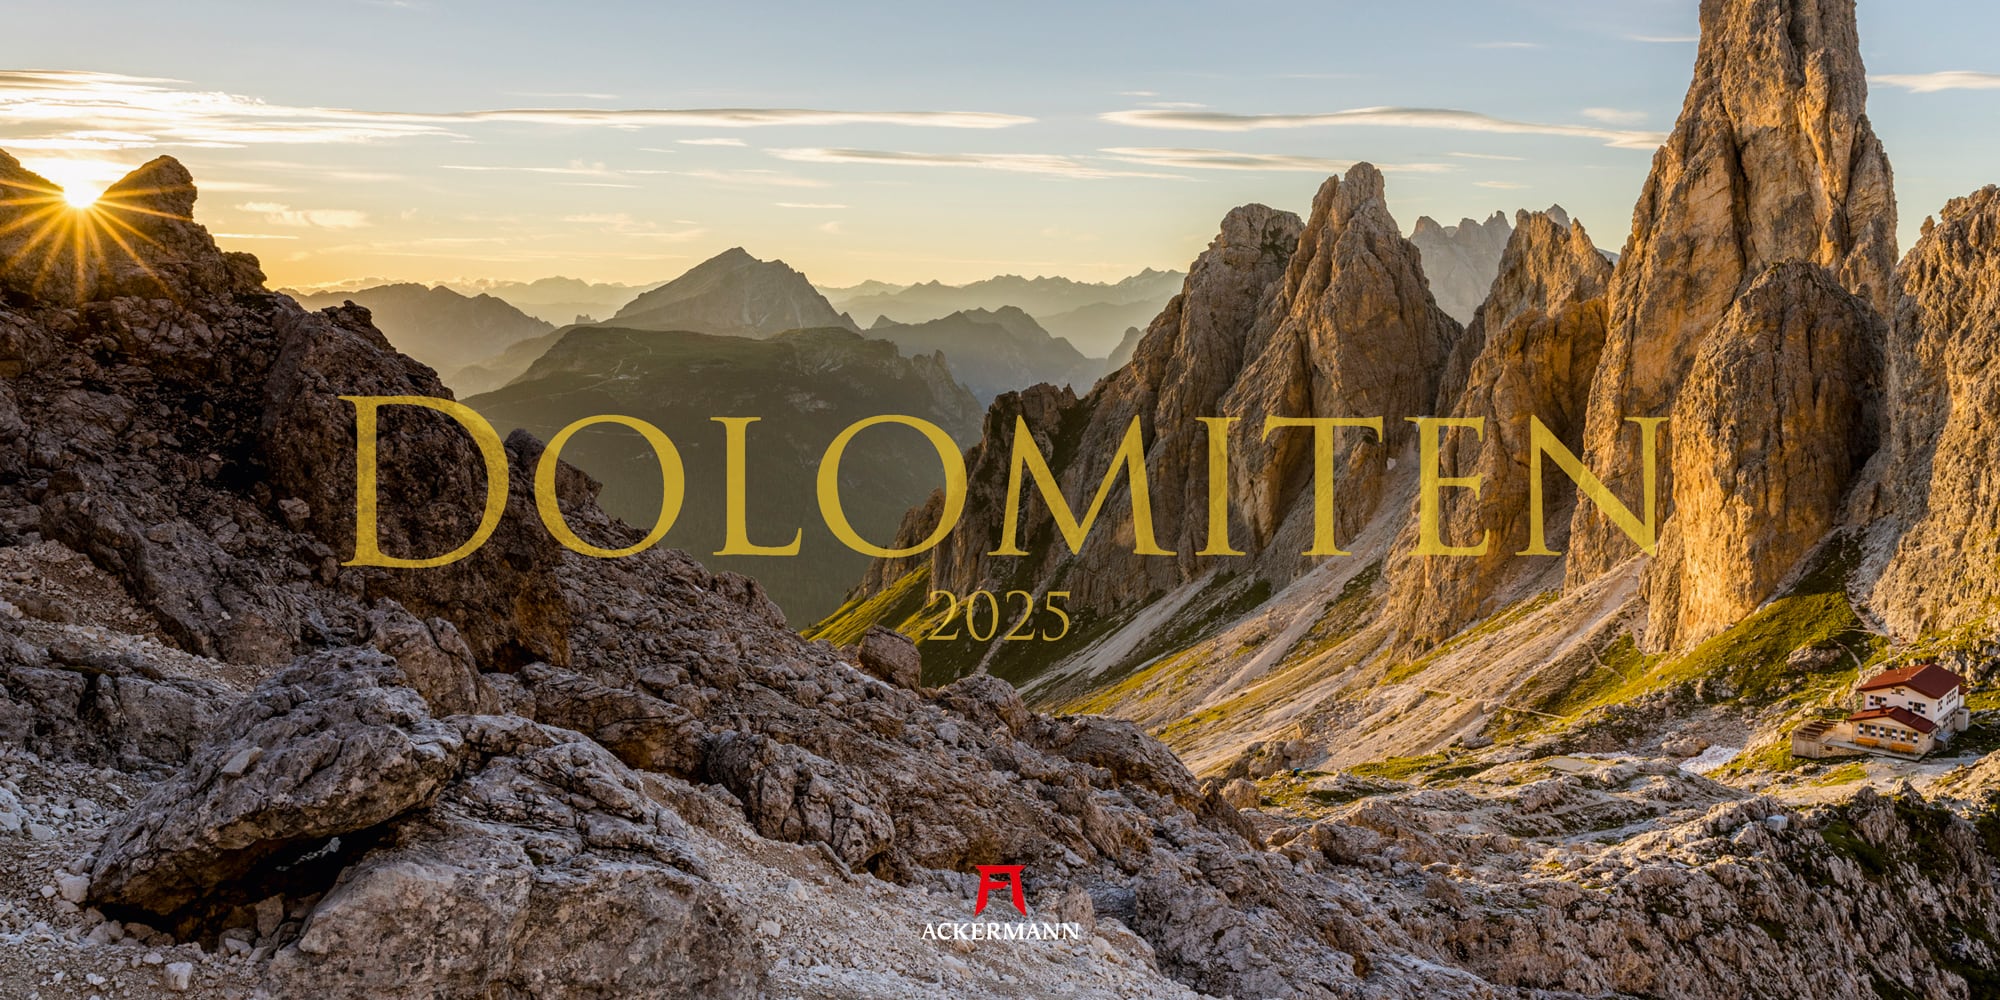 Ackermann Kalender Dolomiten 2025 - Titelblatt